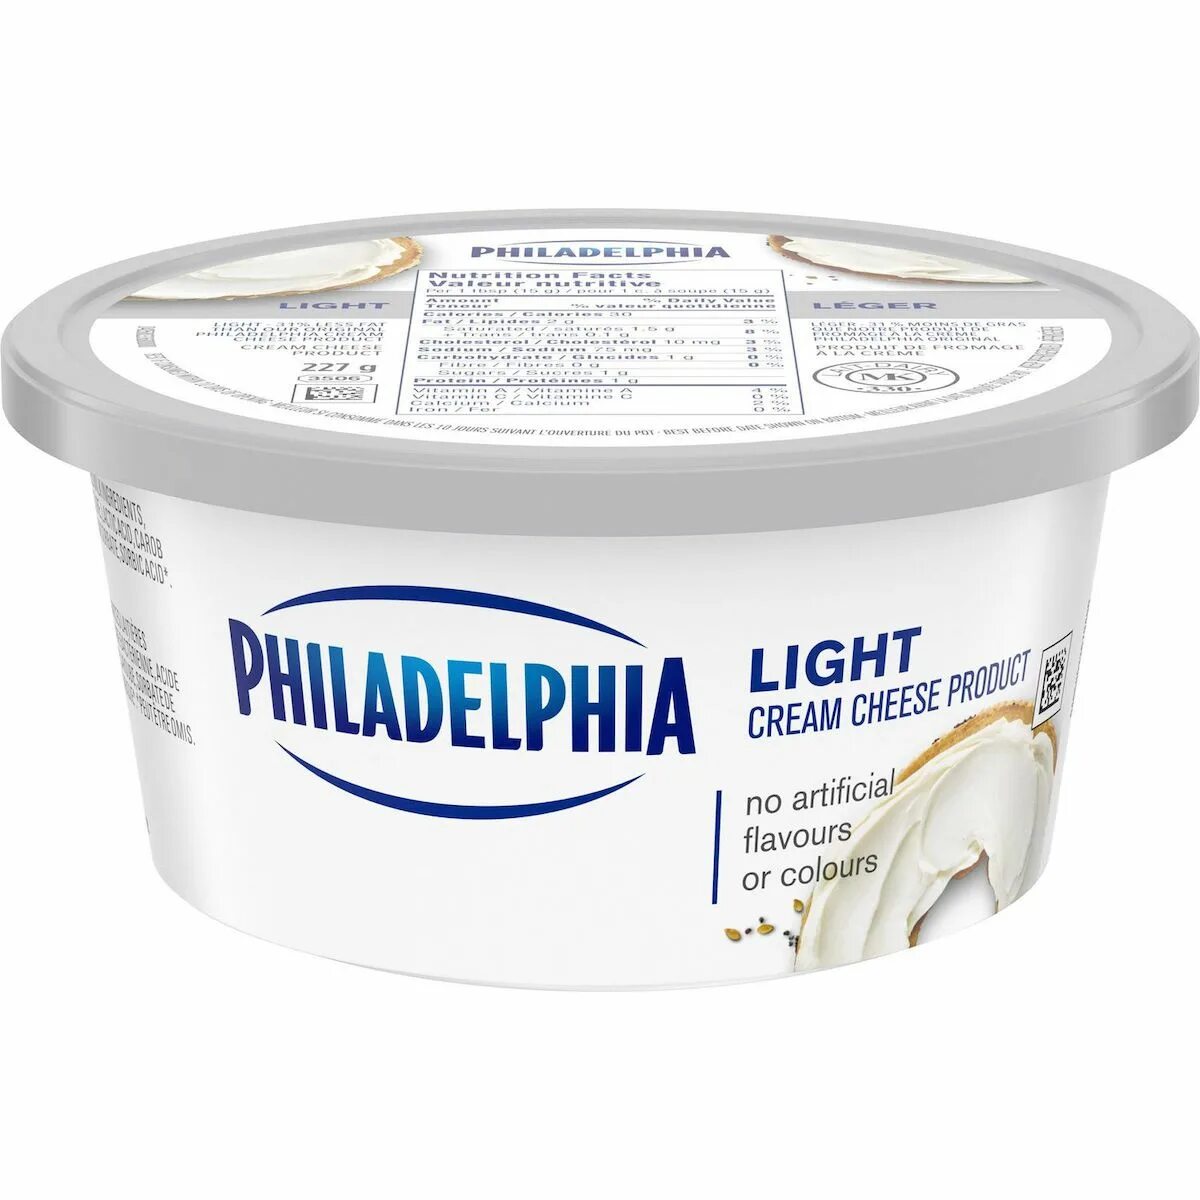 Филадельфия Cream Cheese. Сыр Philadelphia Original. Сливочный сыр крем чиз. Сливочный сыр Филадельфия. Крем чиз можно хранить в холодильнике